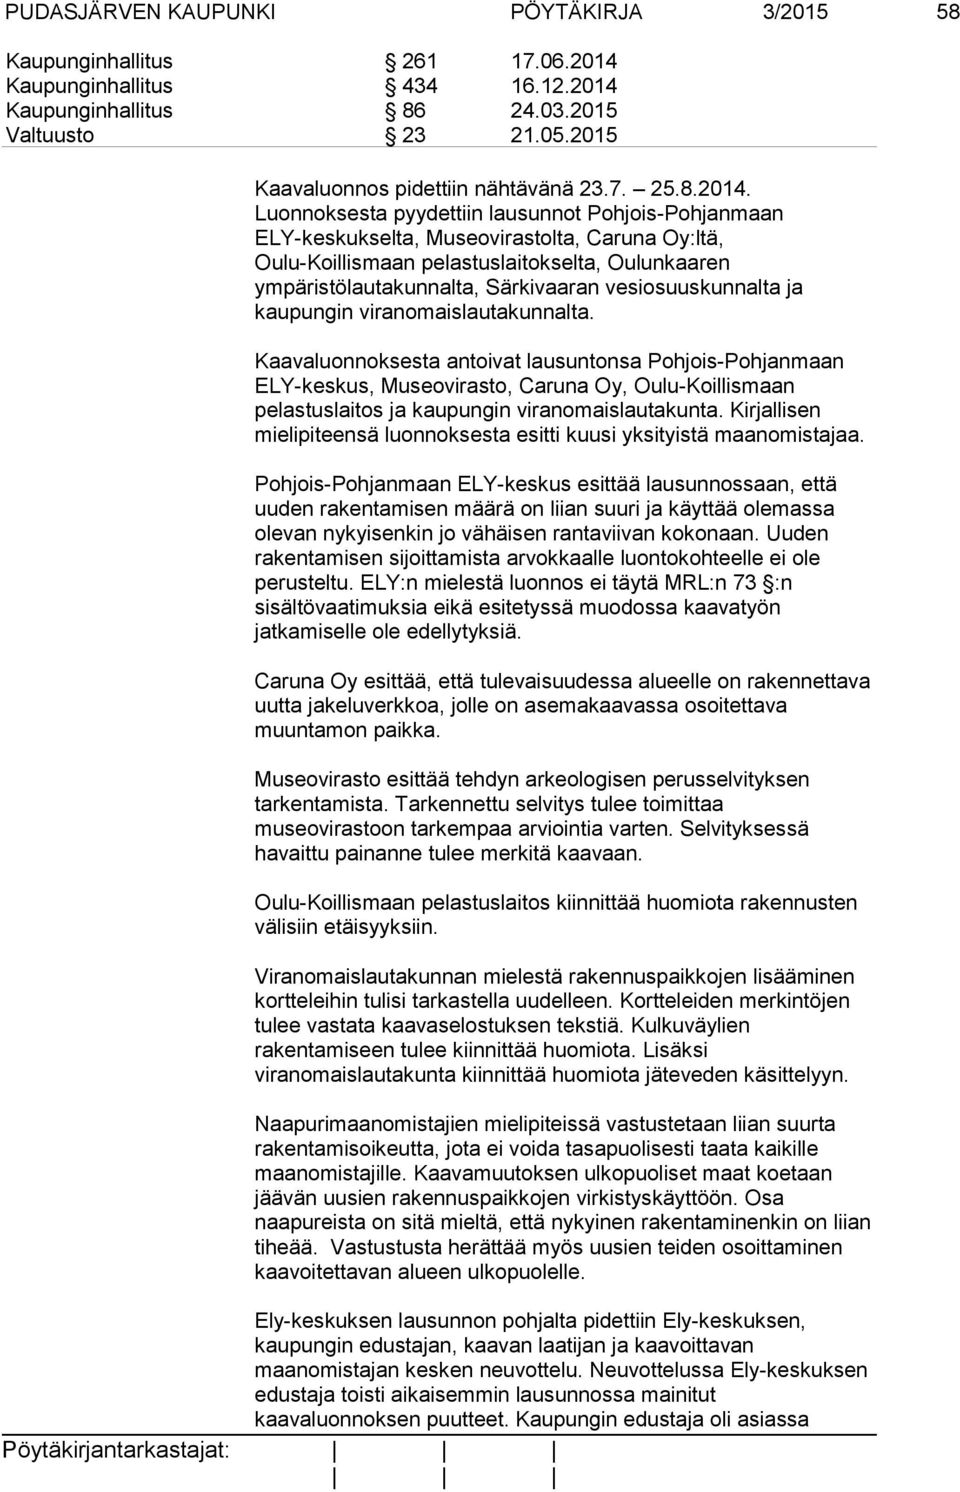 Luonnoksesta pyydettiin lausunnot Pohjois-Pohjanmaan ELY-keskukselta, Museovirastolta, Caruna Oy:ltä, Oulu-Koillismaan pelastuslaitokselta, Oulunkaaren ympäristölautakunnalta, Särkivaaran